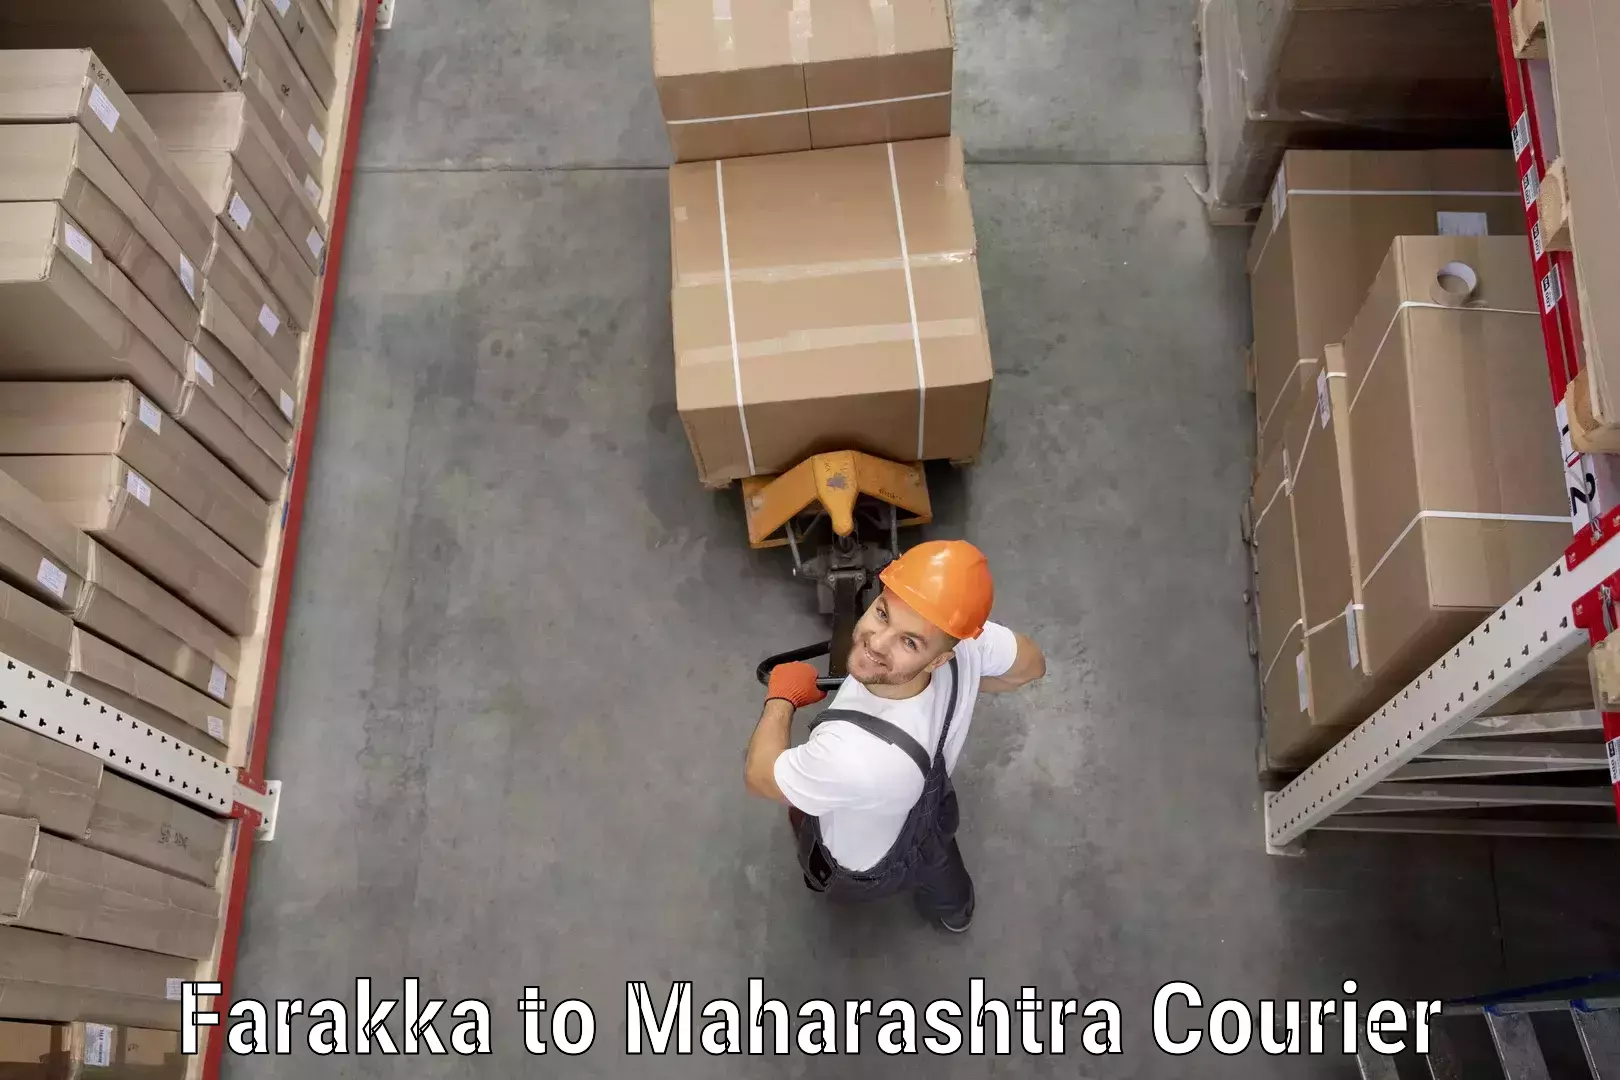 Tailored delivery services Farakka to Maharashtra